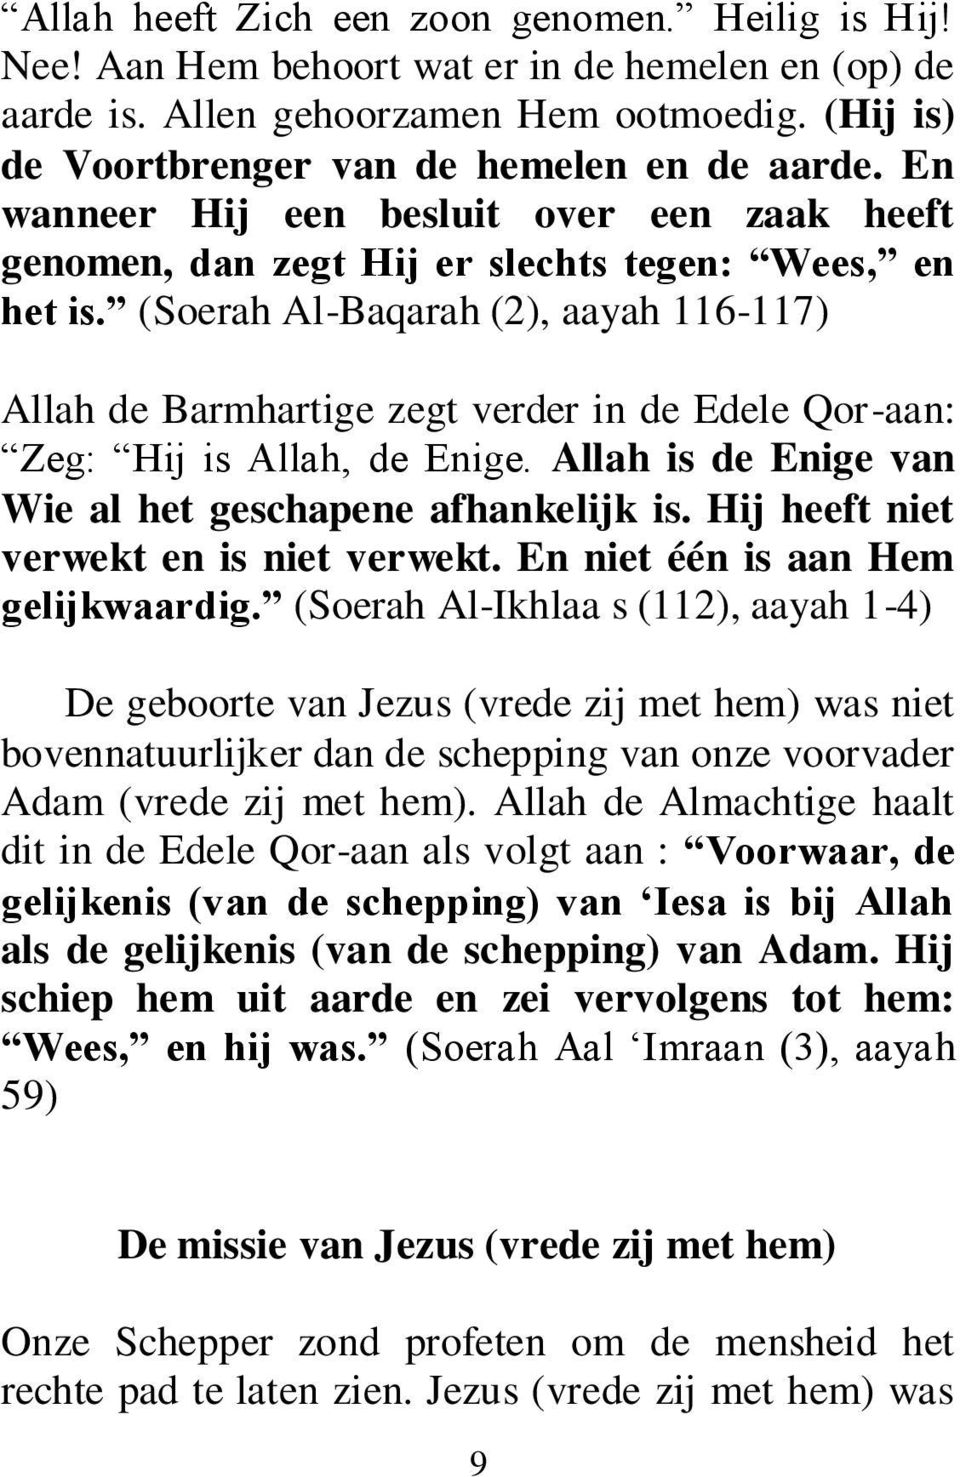 (Soerah Al-Baqarah (2), aayah 116-117) Allah de Barmhartige zegt verder in de Edele Qor-aan: Zeg: Hij is Allah, de Enige. Allah is de Enige van Wie al het geschapene afhankelijk is.